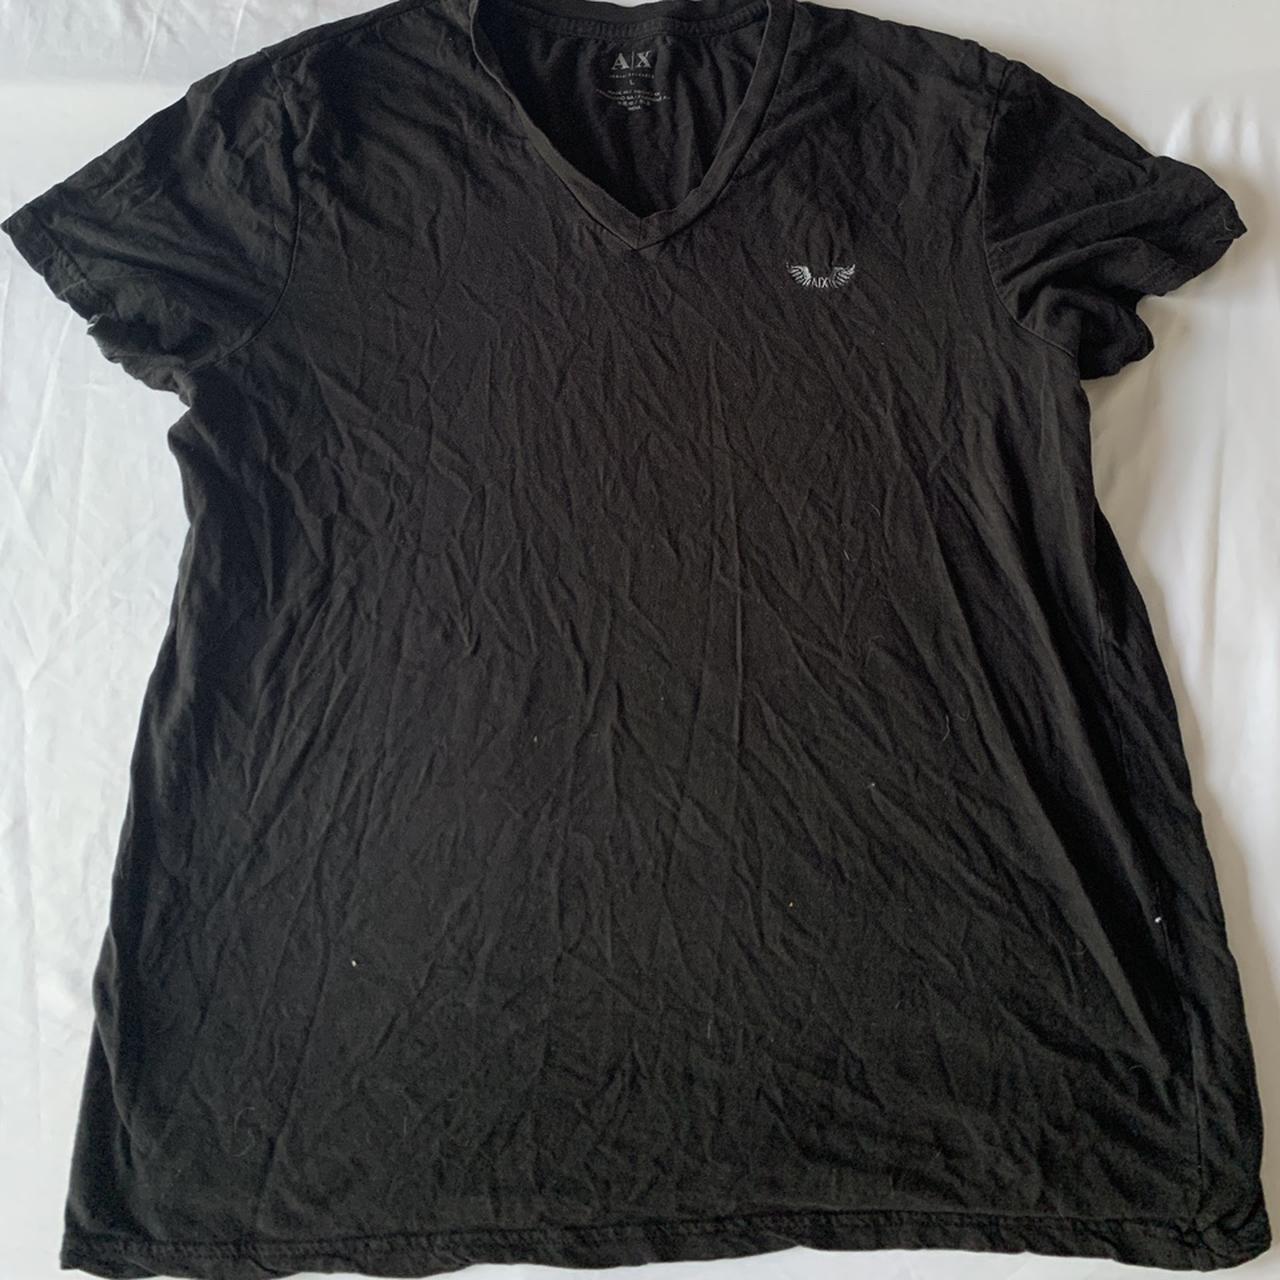 Armani Men's Black Shirt